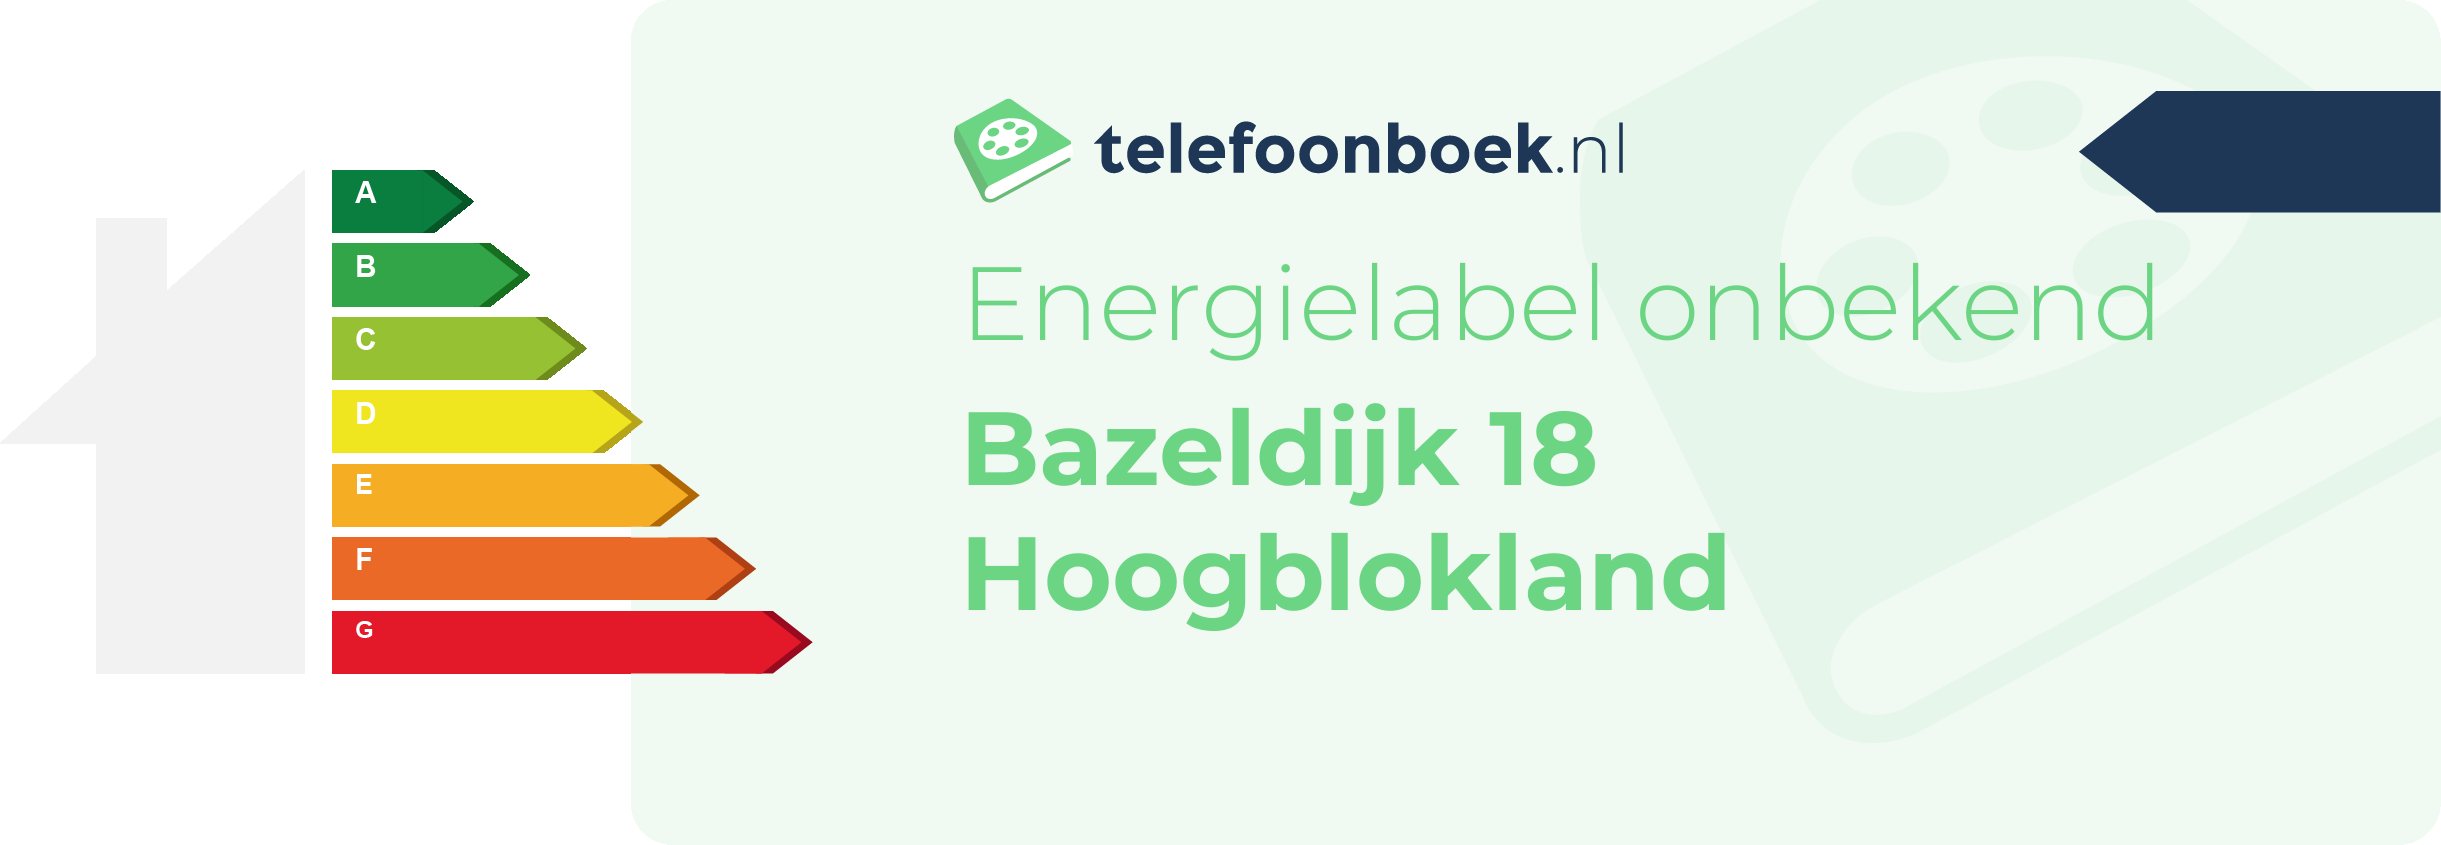 Energielabel Bazeldijk 18 Hoogblokland